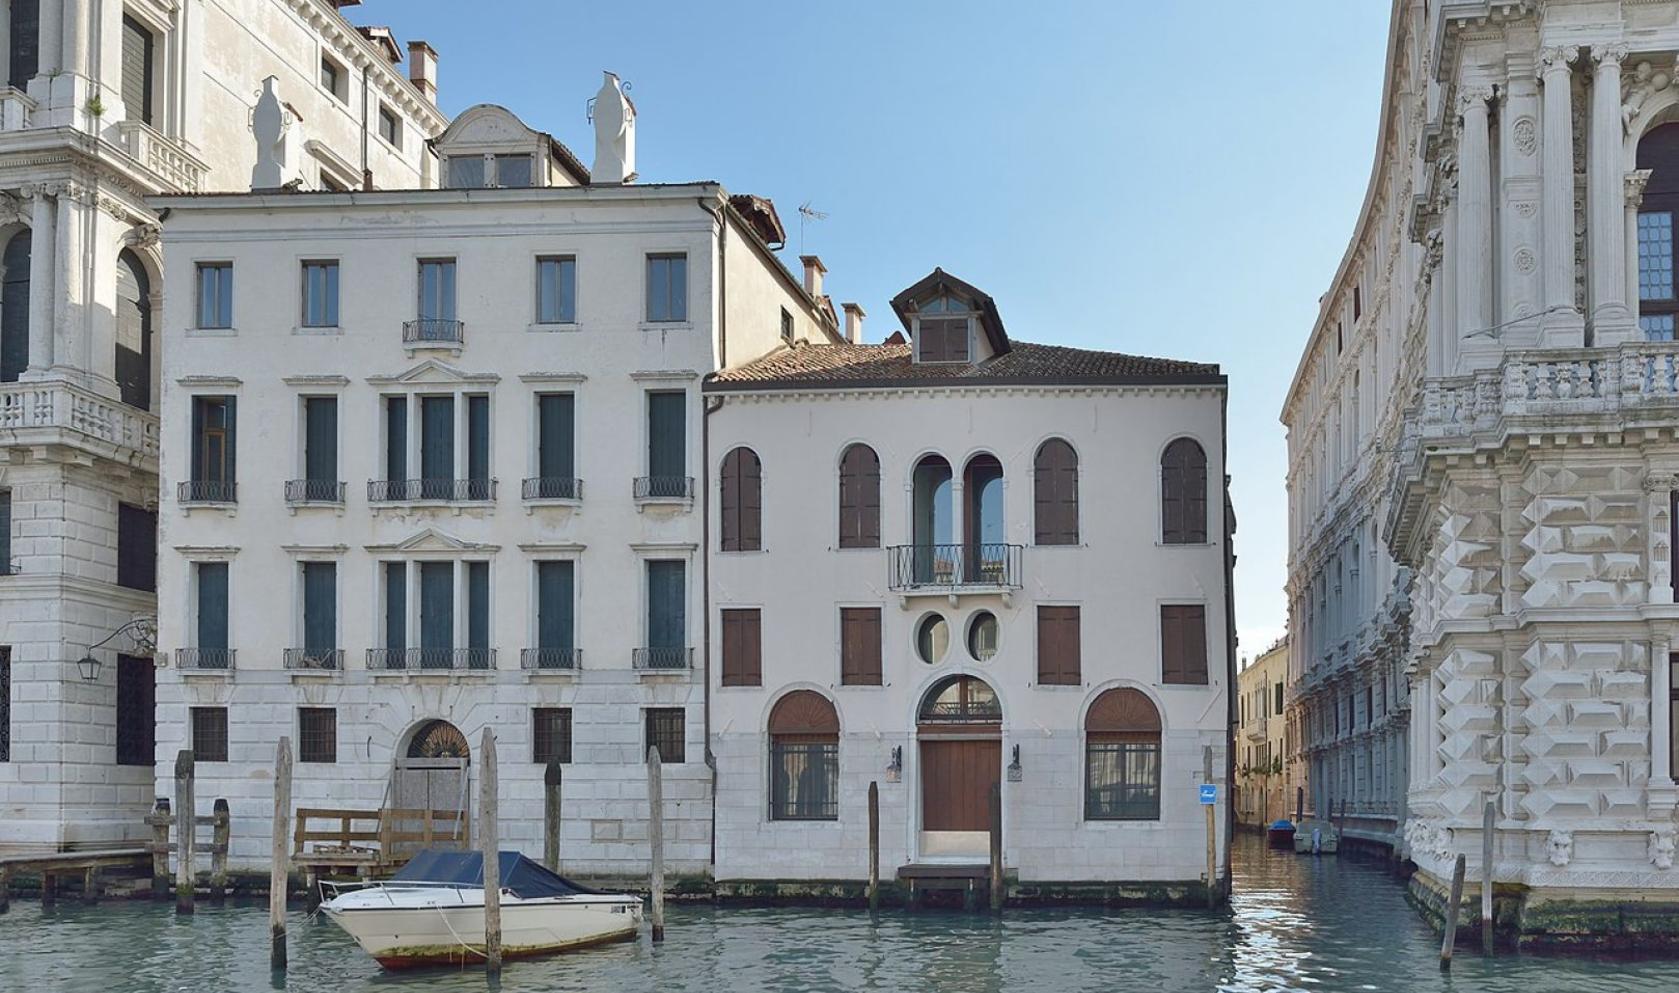 Toscana Immobiliare - Esclusivo palazzetto indipendente, affacciato sul Canal Grande.